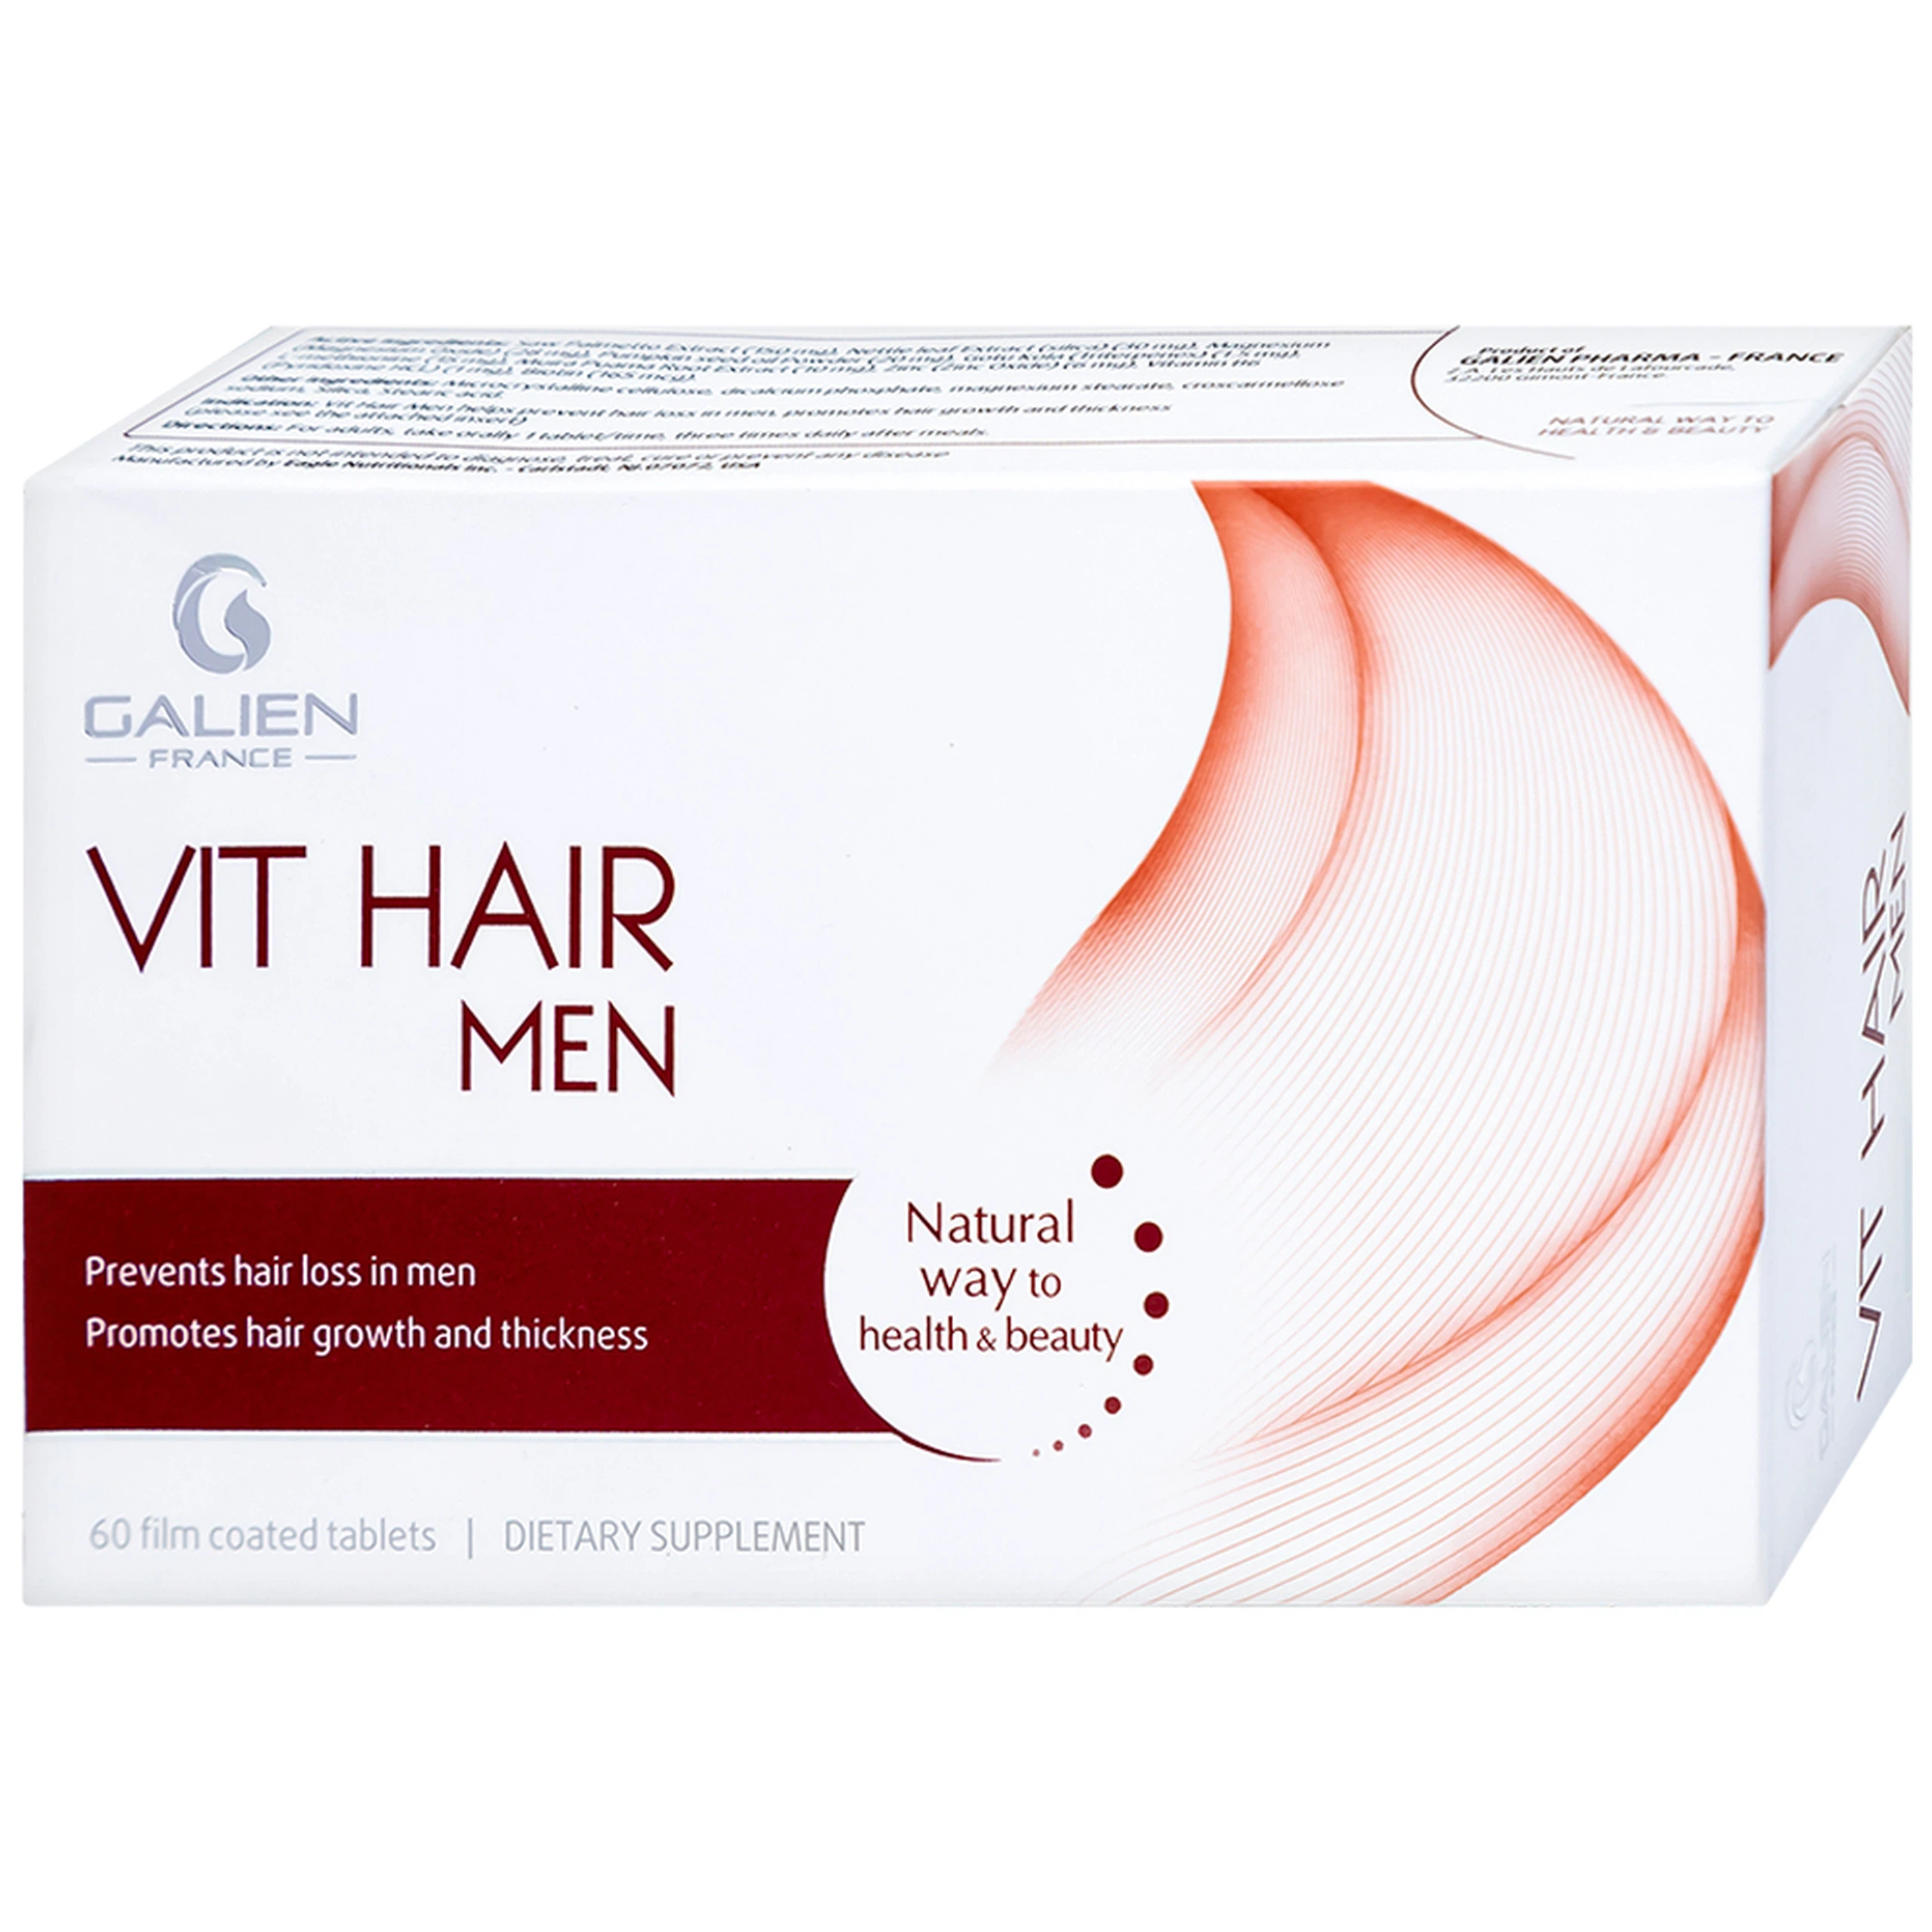 Viên uống Vit Hair Men Galien hỗ trợ giảm rụng tóc dành cho nam giới (4 vỉ x 15 viên)